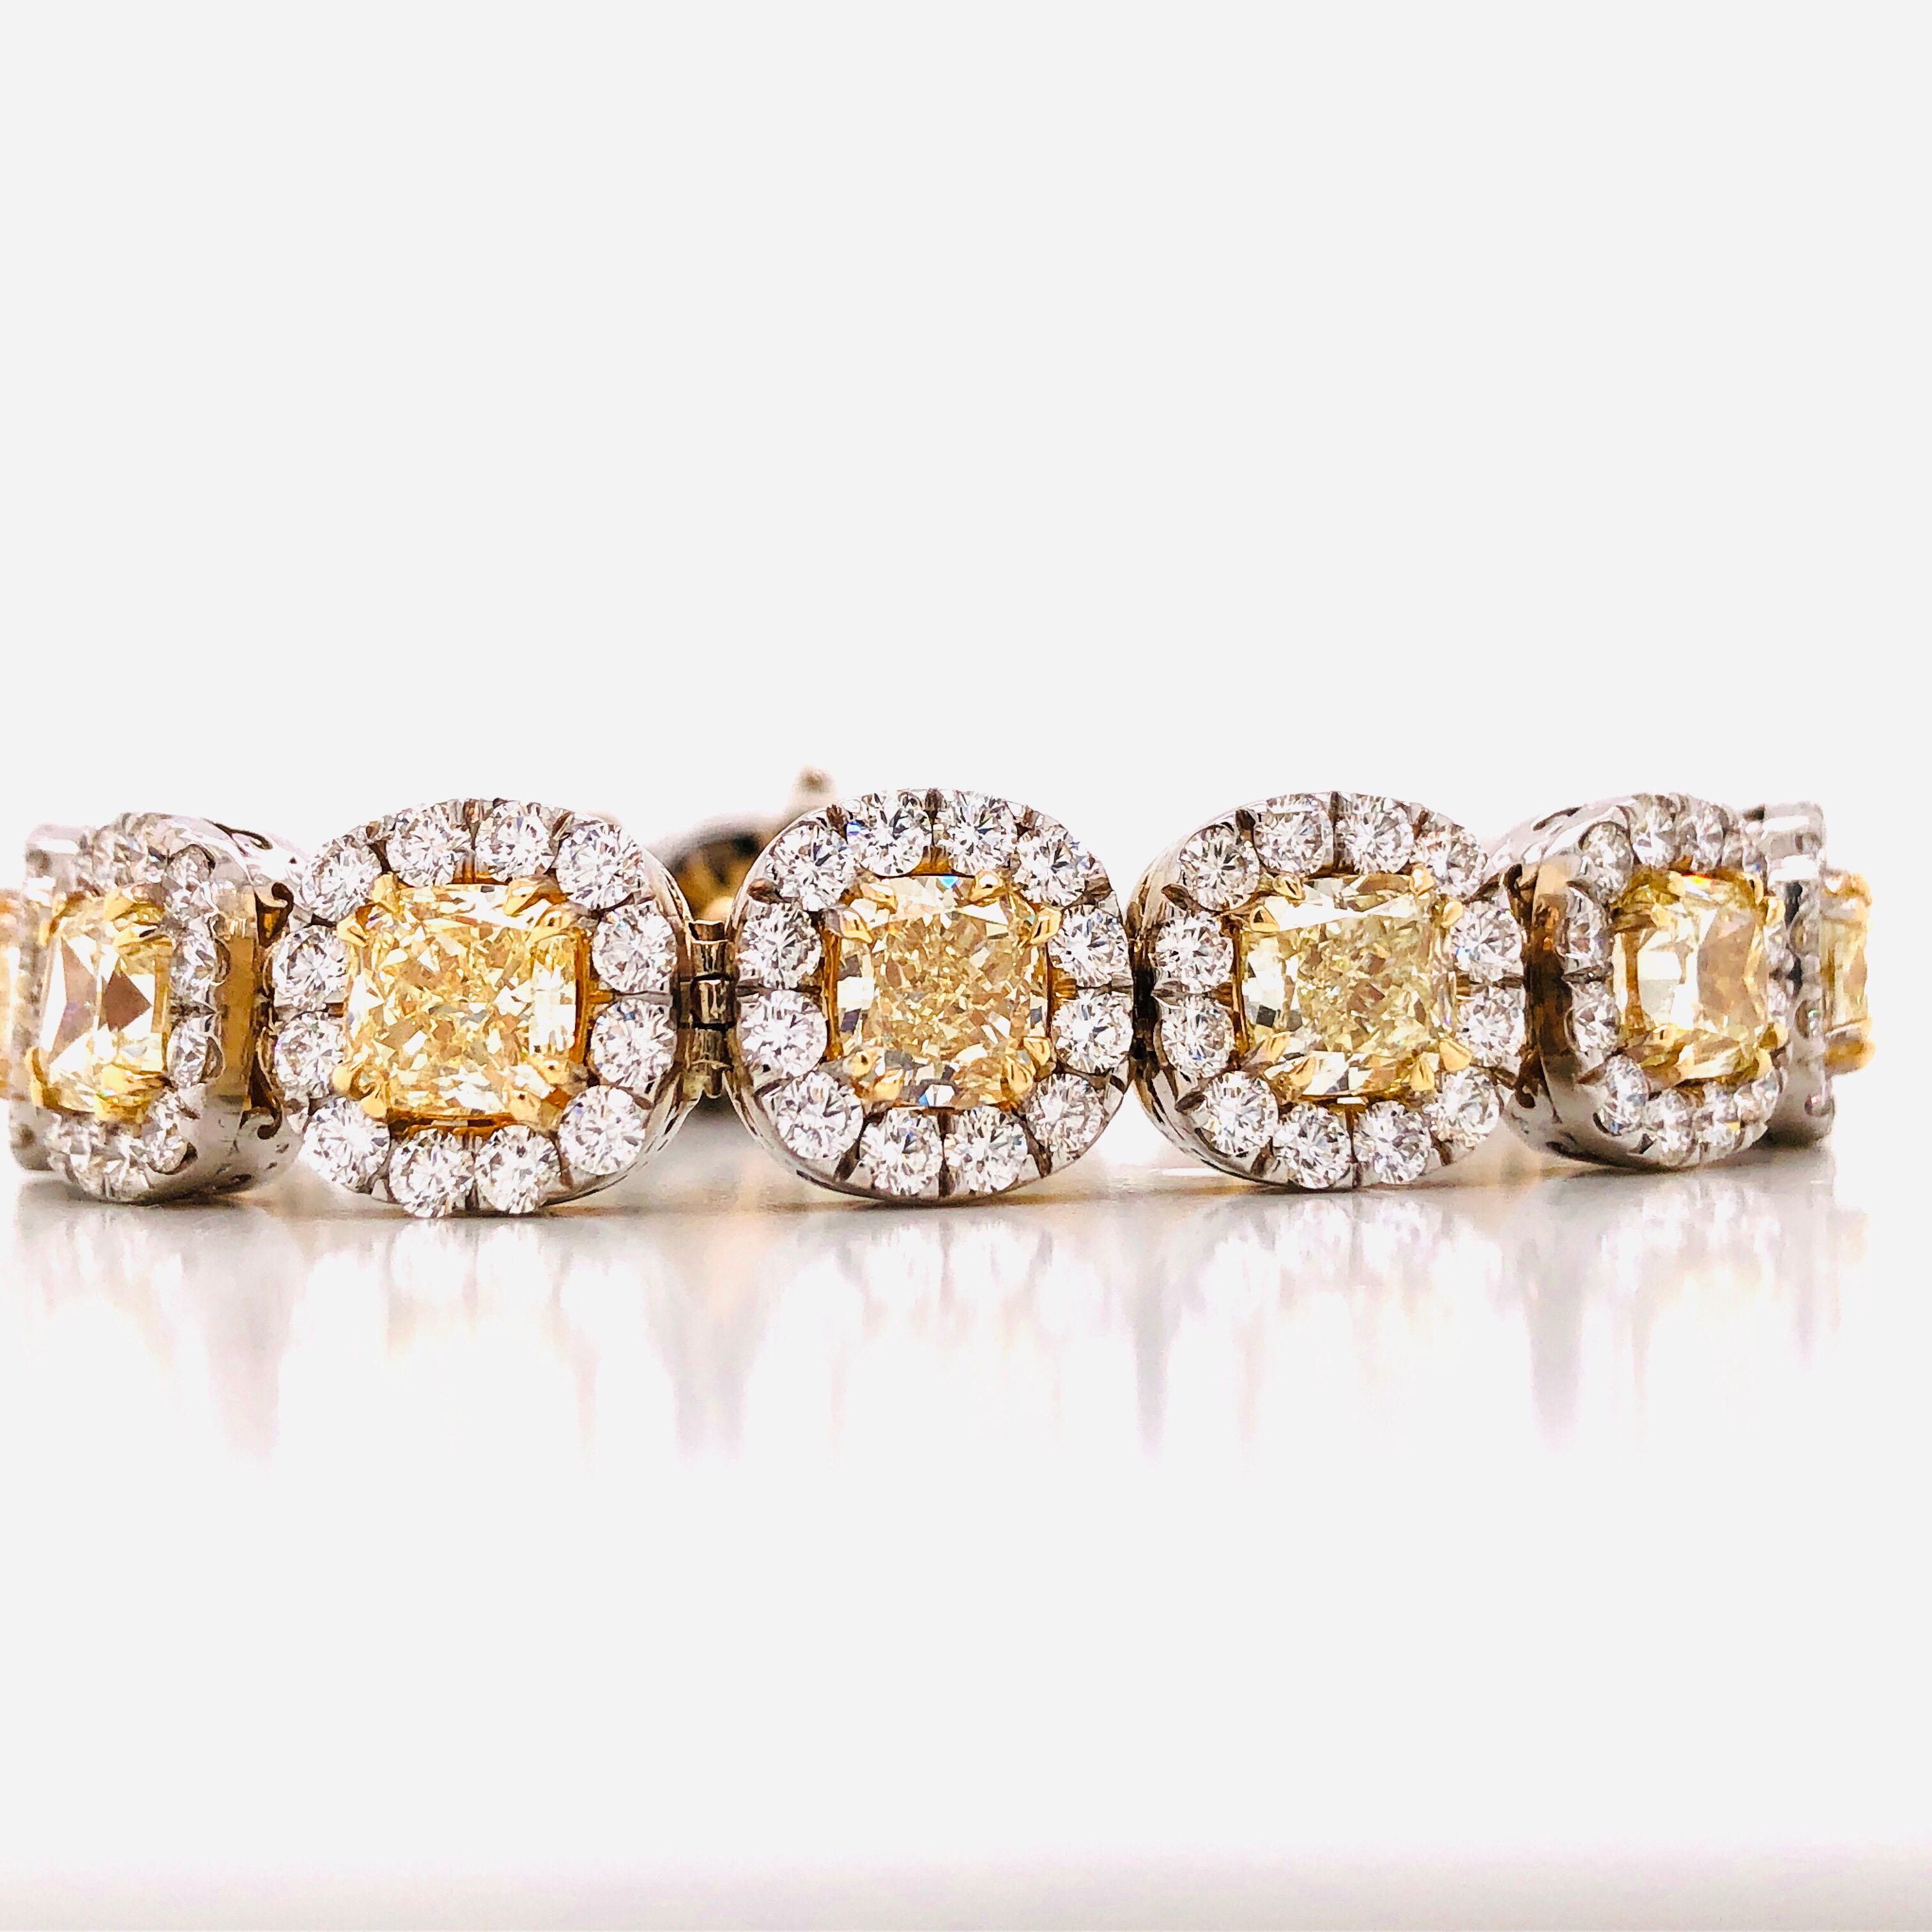 Mit nur 15 gelben Diamanten von insgesamt 22,93 Karat, wobei das durchschnittliche Gewicht jedes gelben Diamanten ca. 1,52 Karat beträgt! Die Breite des Armbands beträgt etwa 11,70 mm, die gelben Diamanten sind im Durchschnitt etwa 6,30 mm breit.